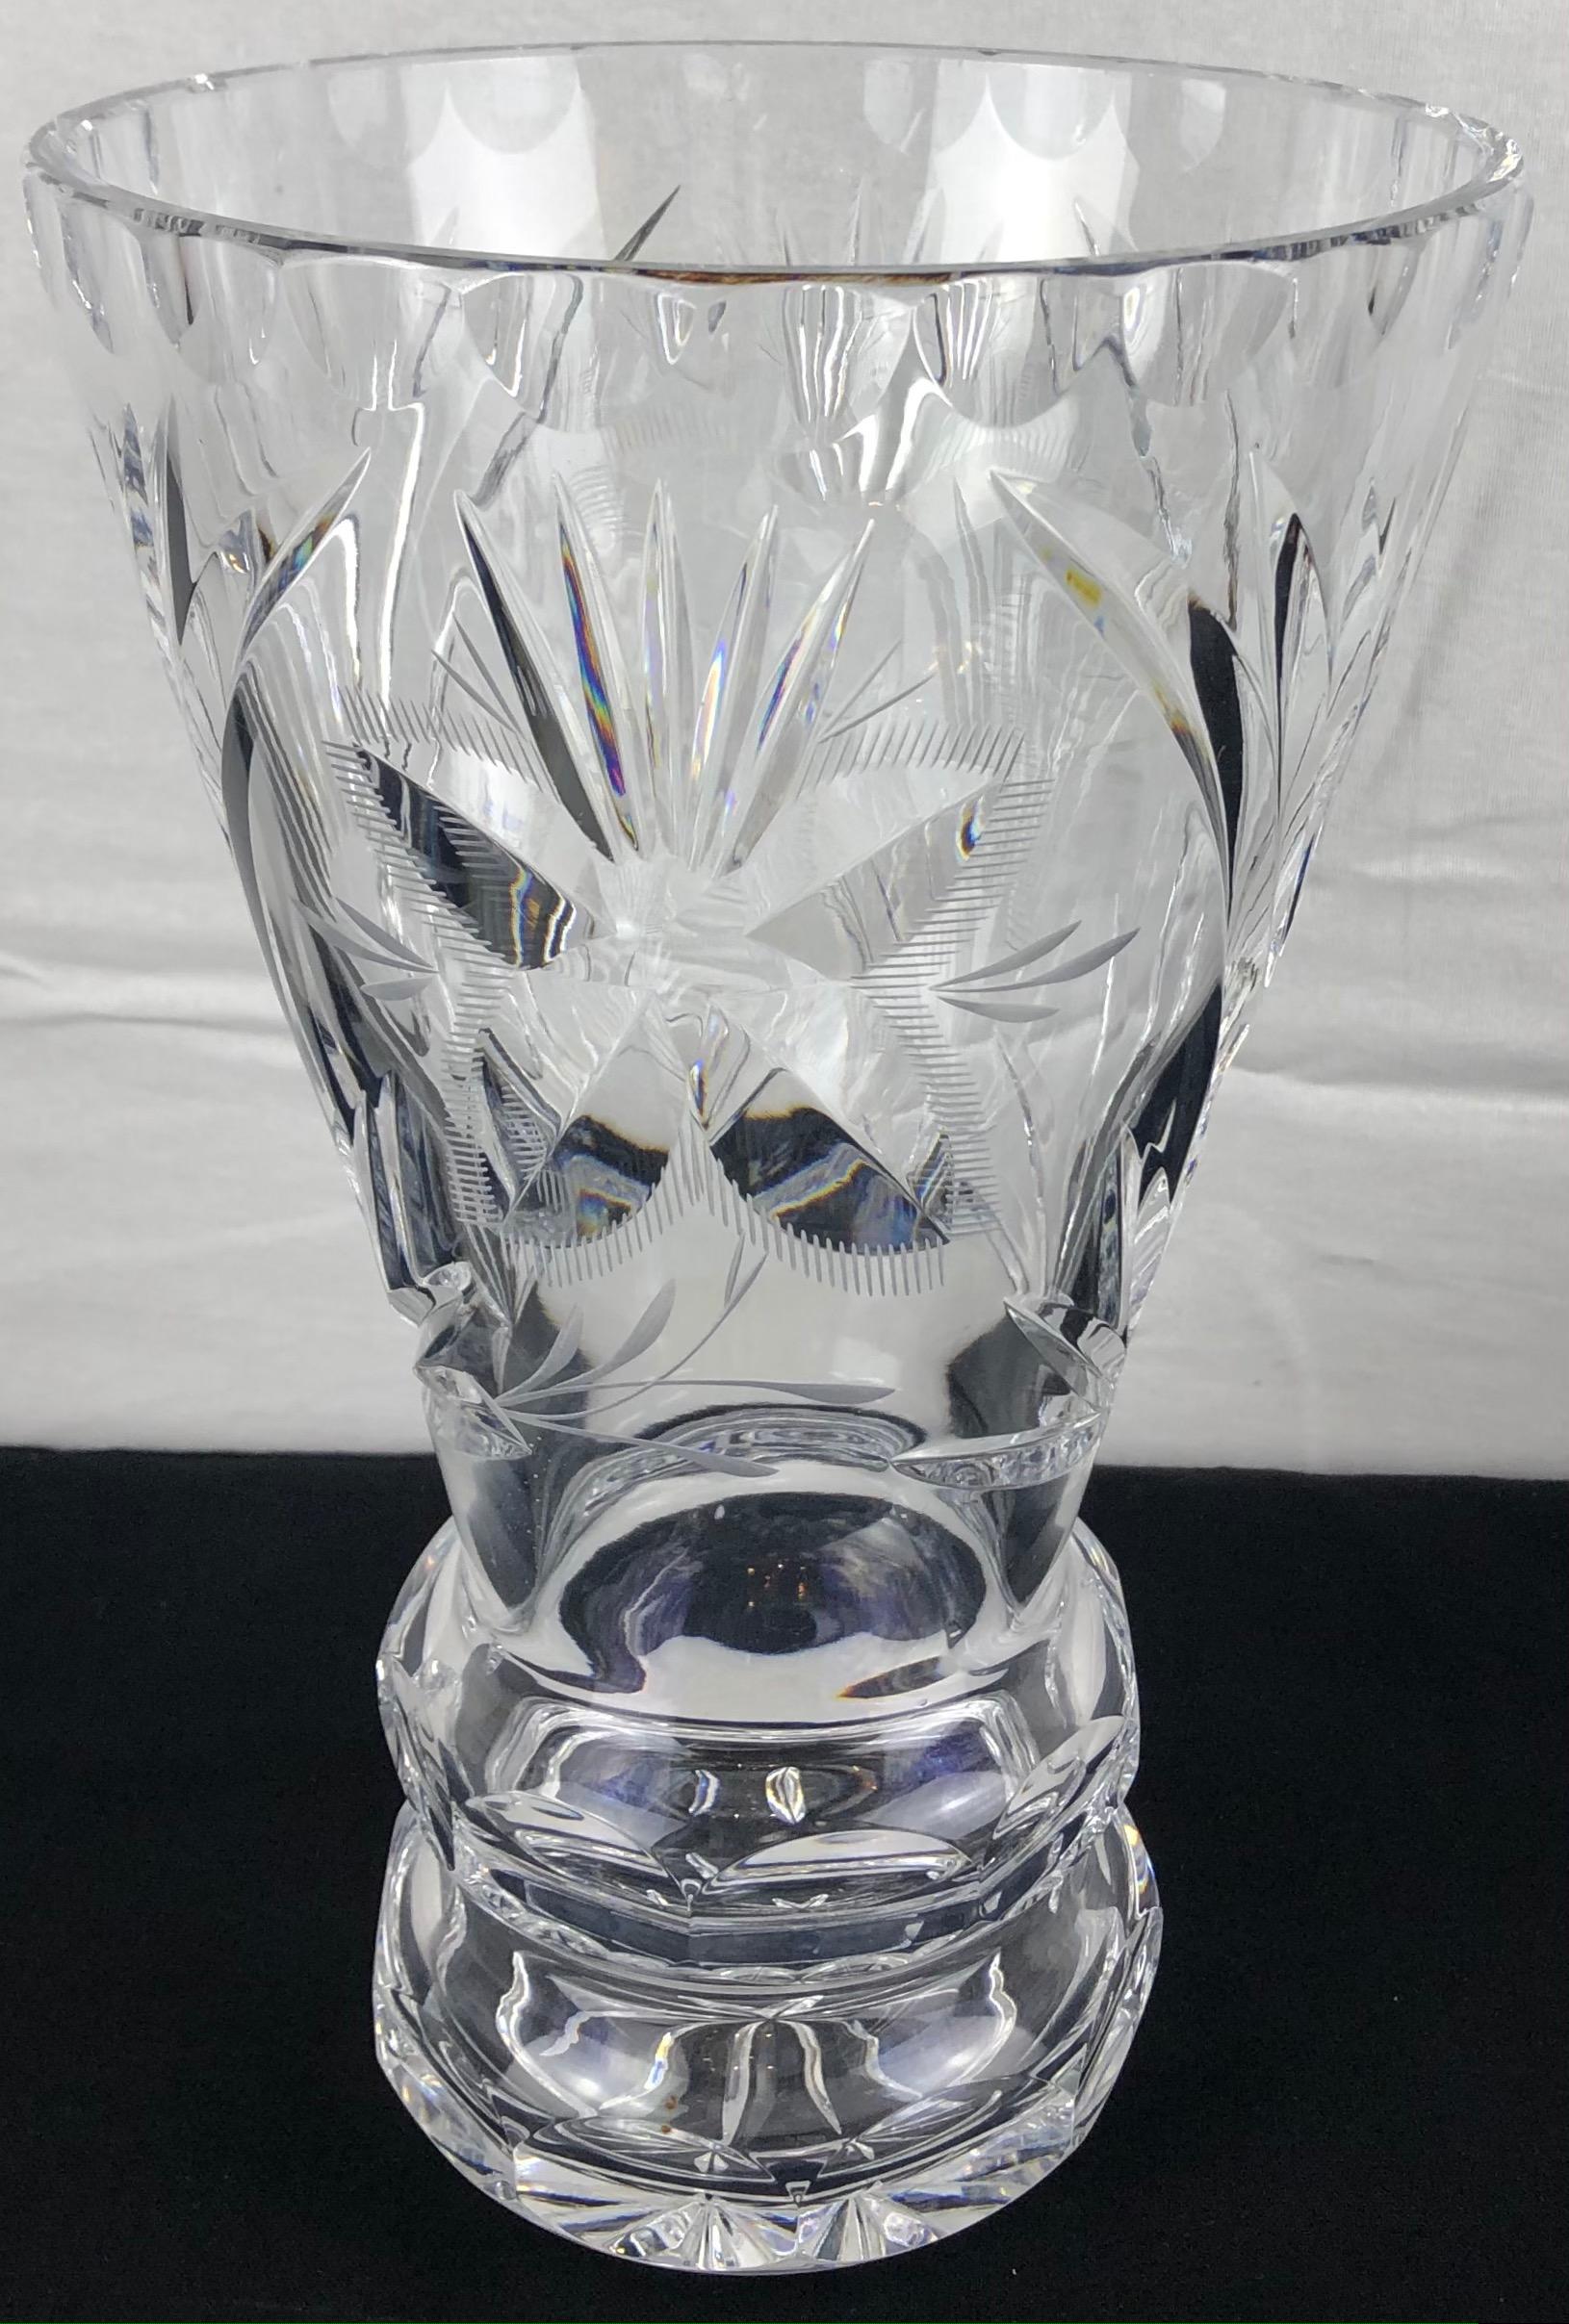 Un beau vase en cristal français qui varie d'un design simple à des détails extraordinaires.
Un cristal de très bonne qualité, délicieusement lourd, qui carillonne magnifiquement lorsqu'on le tapote. 

Parfait état. Pas d'ébréchures ni de